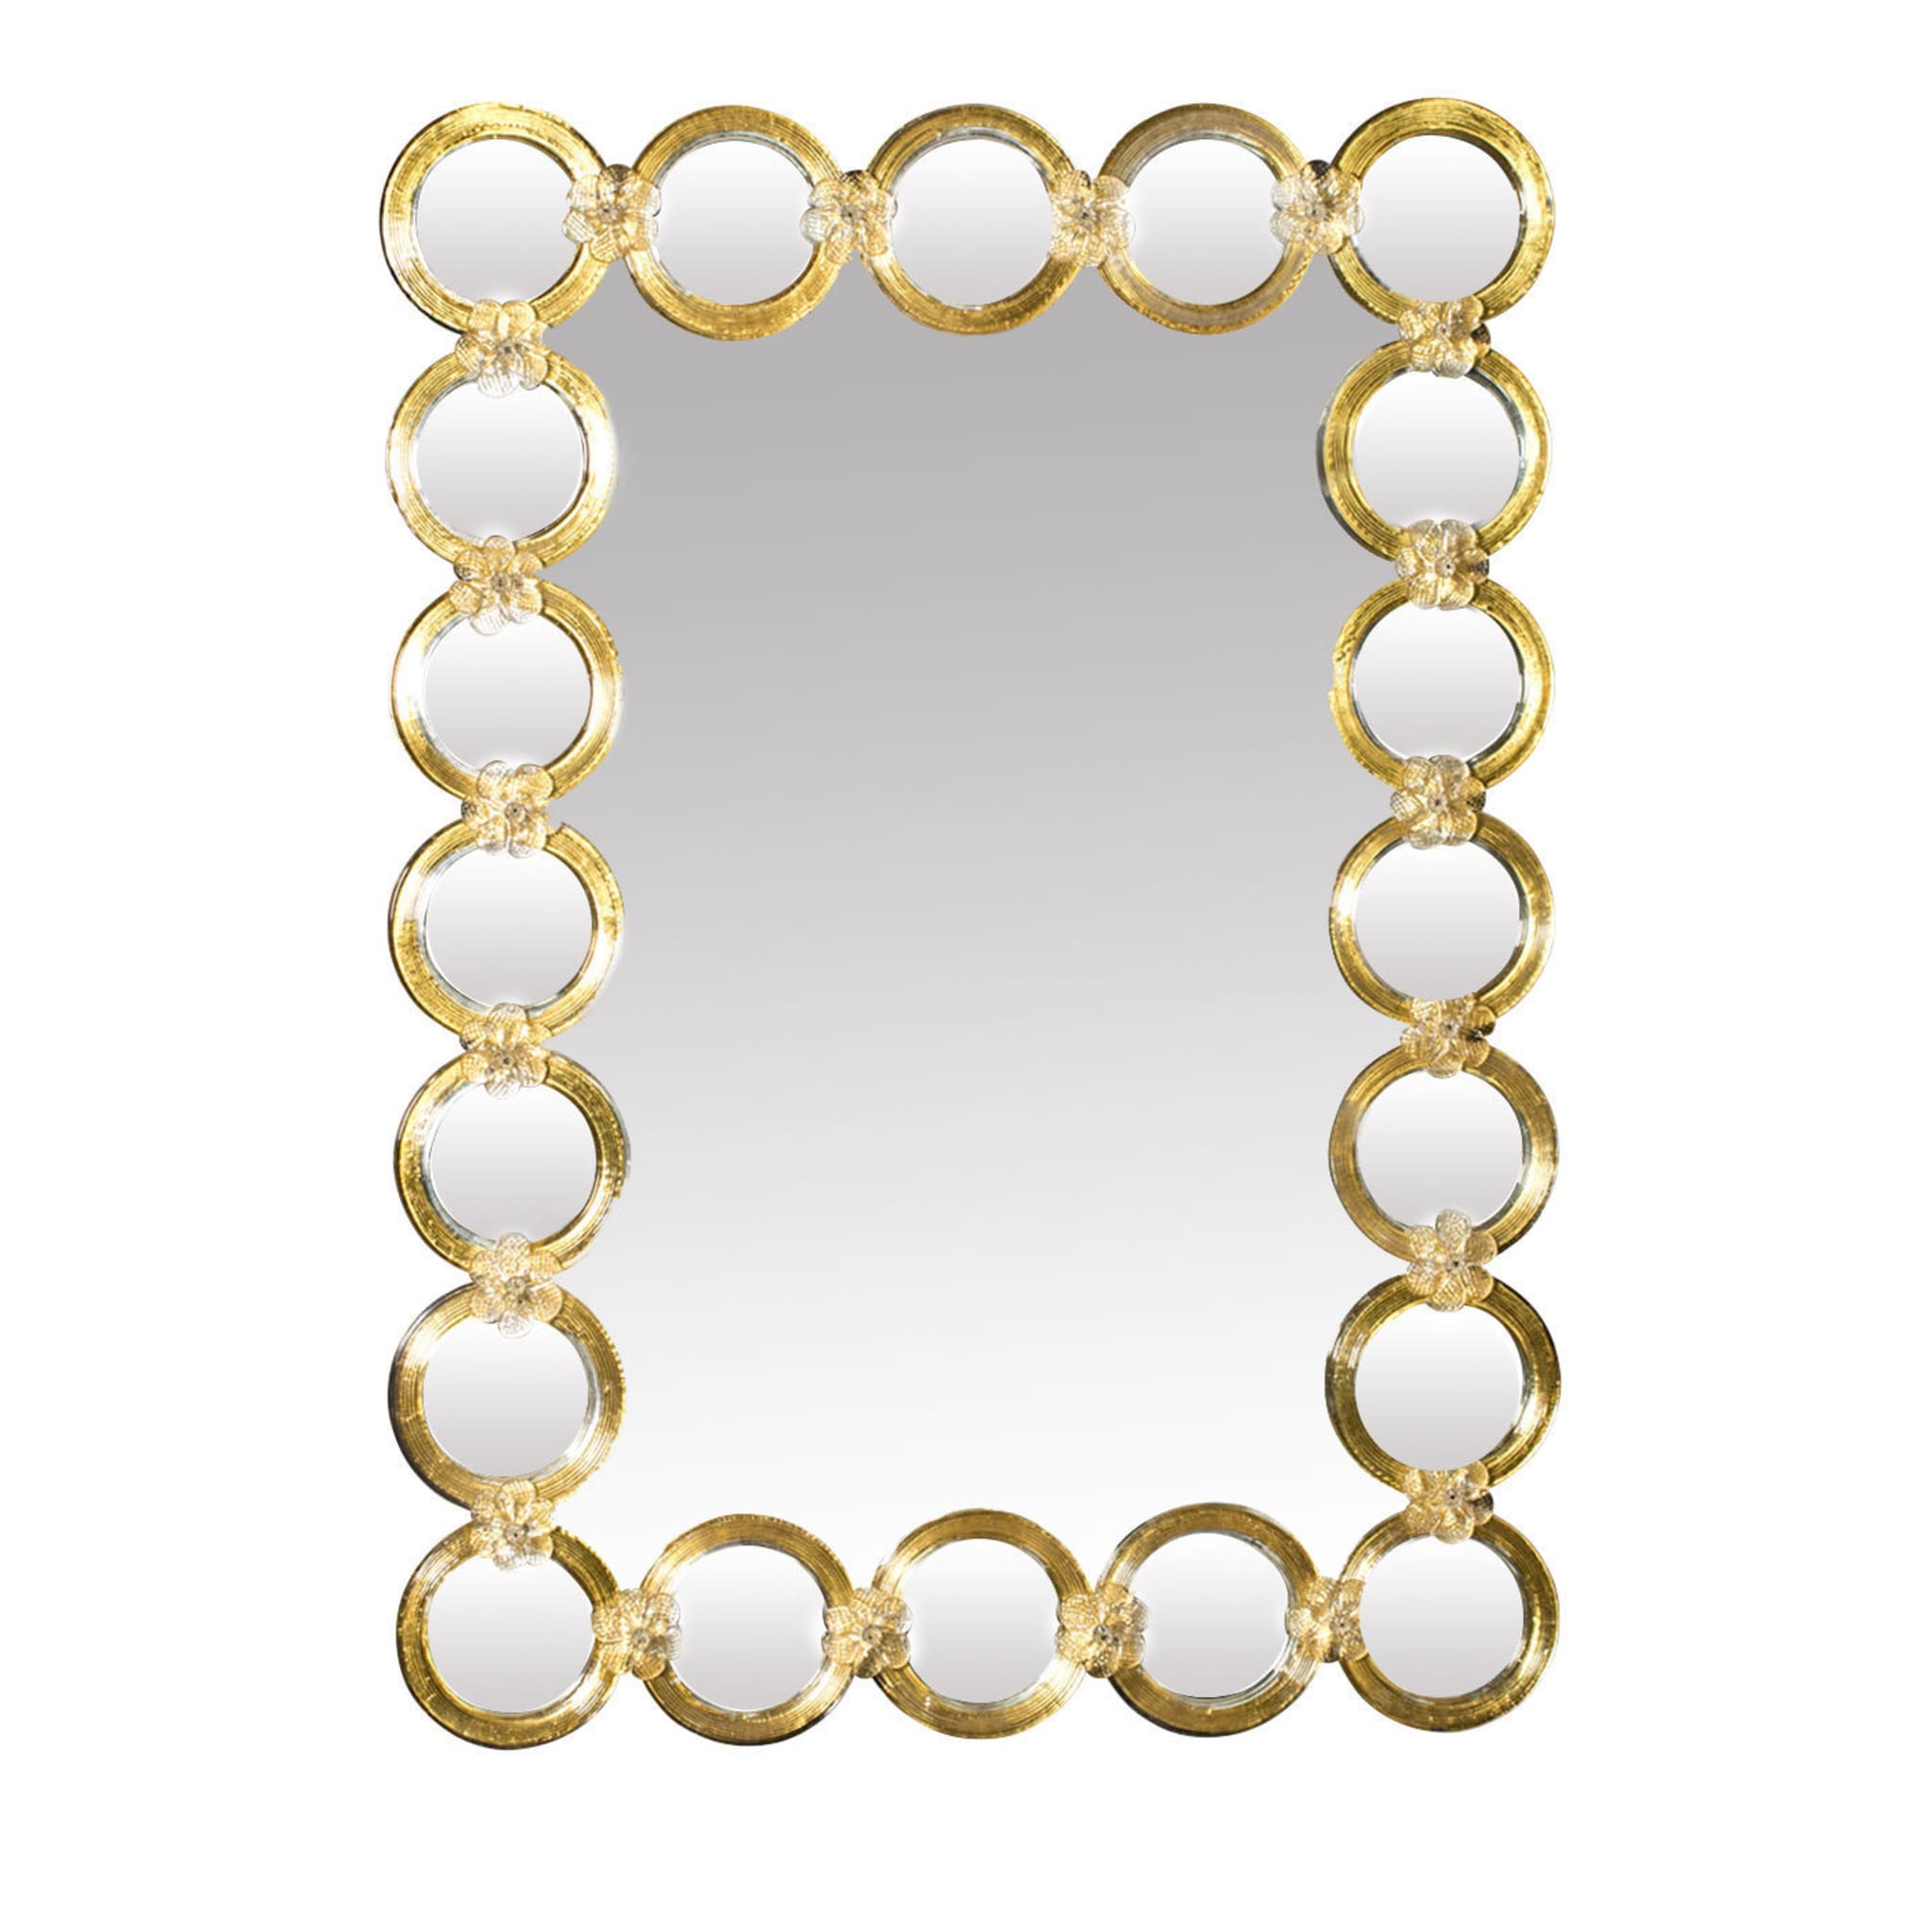  Miroir à anneaux vénitiens - Vue principale